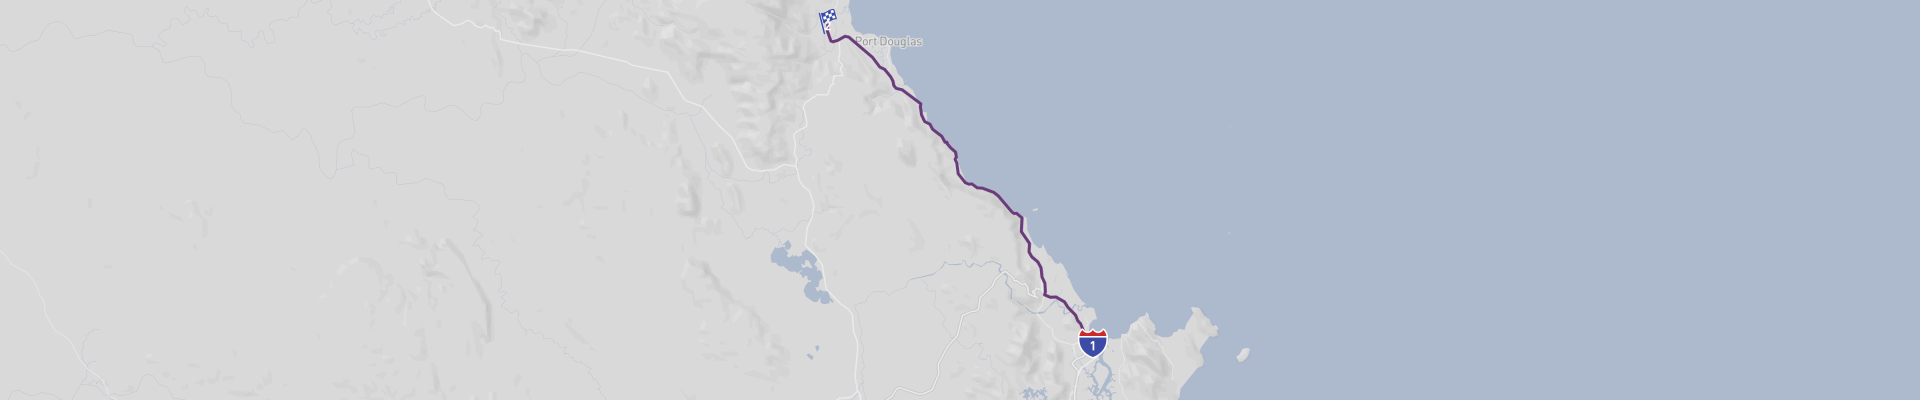 Carretera panorámica Captain Cook Highway